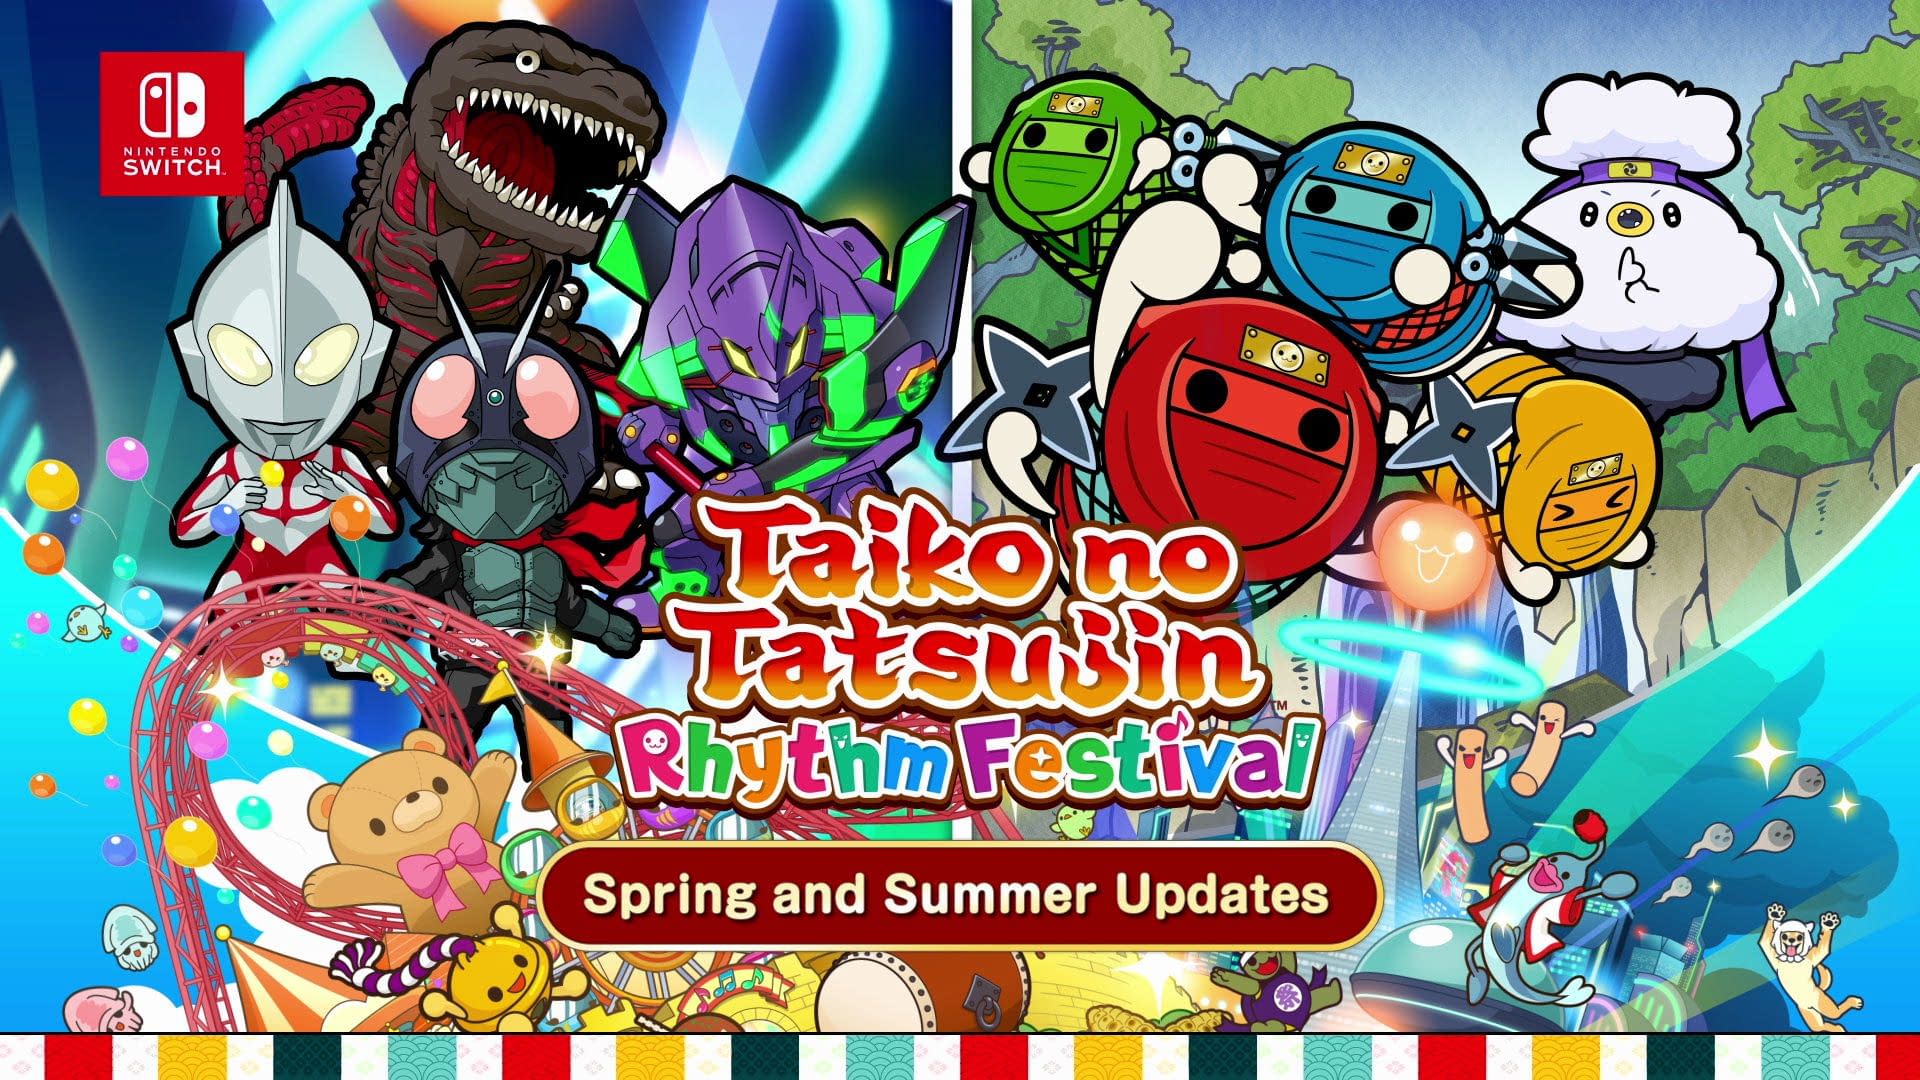 Taiko no Tatsujin: Drum'n'Fun! - Trailer de lançamento (Nintendo